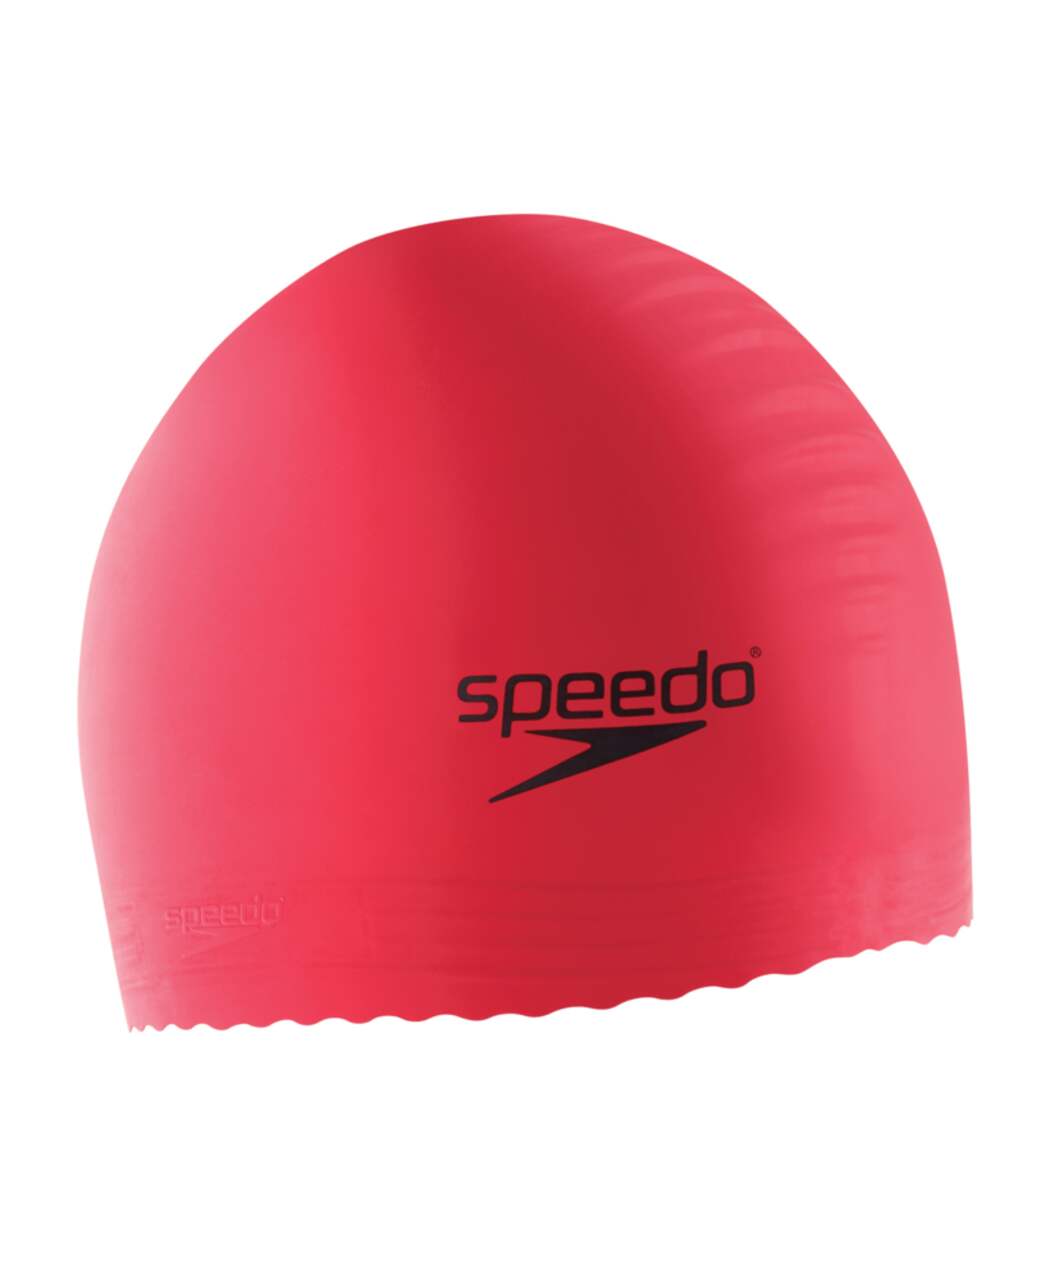 Speedo - Bonnet de bain - Adulte (RD767)